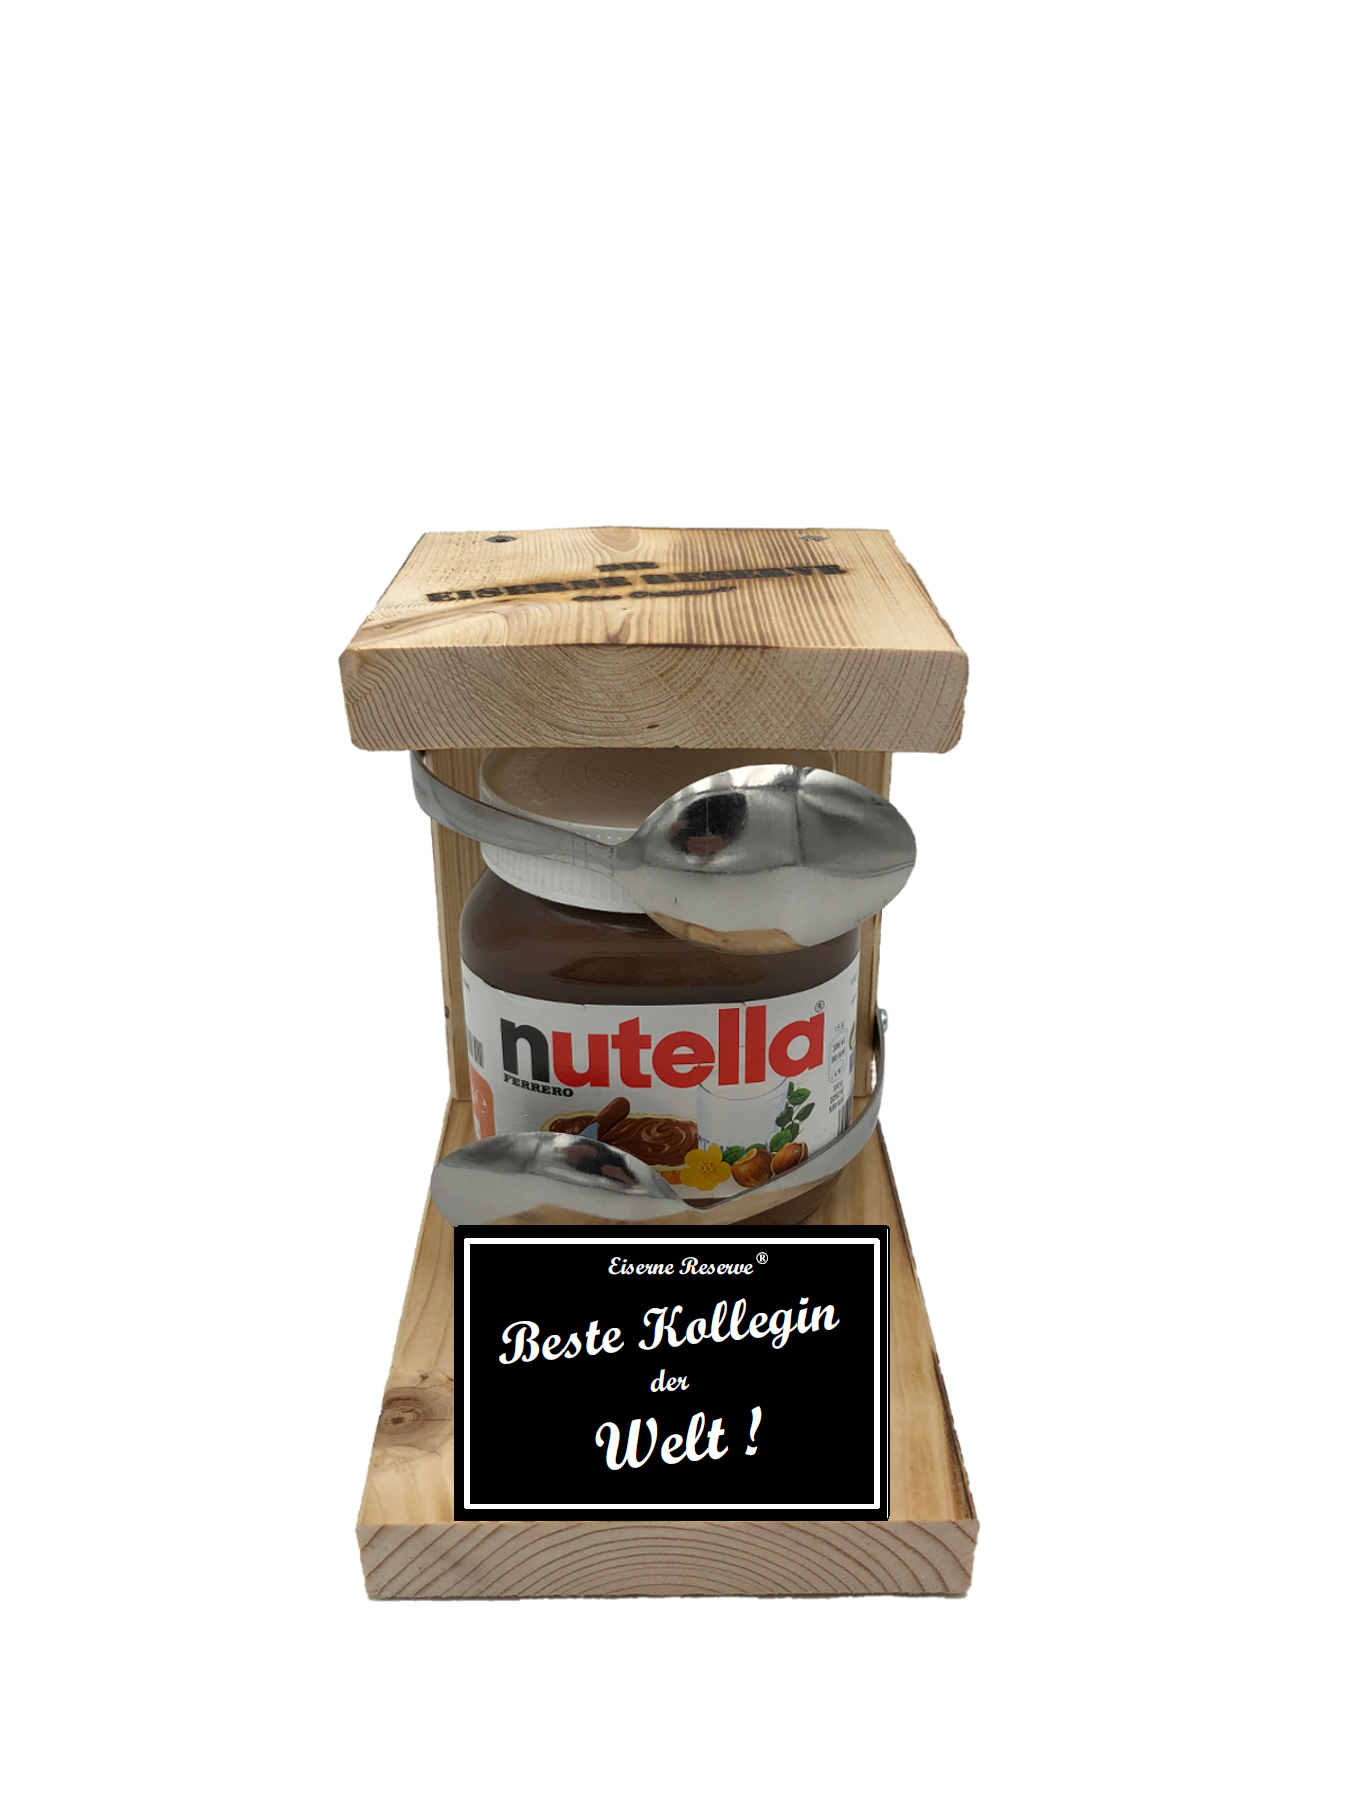 Beste Kollegin der Welt Löffel Nutella Geschenk - Die Nutella Geschenkidee